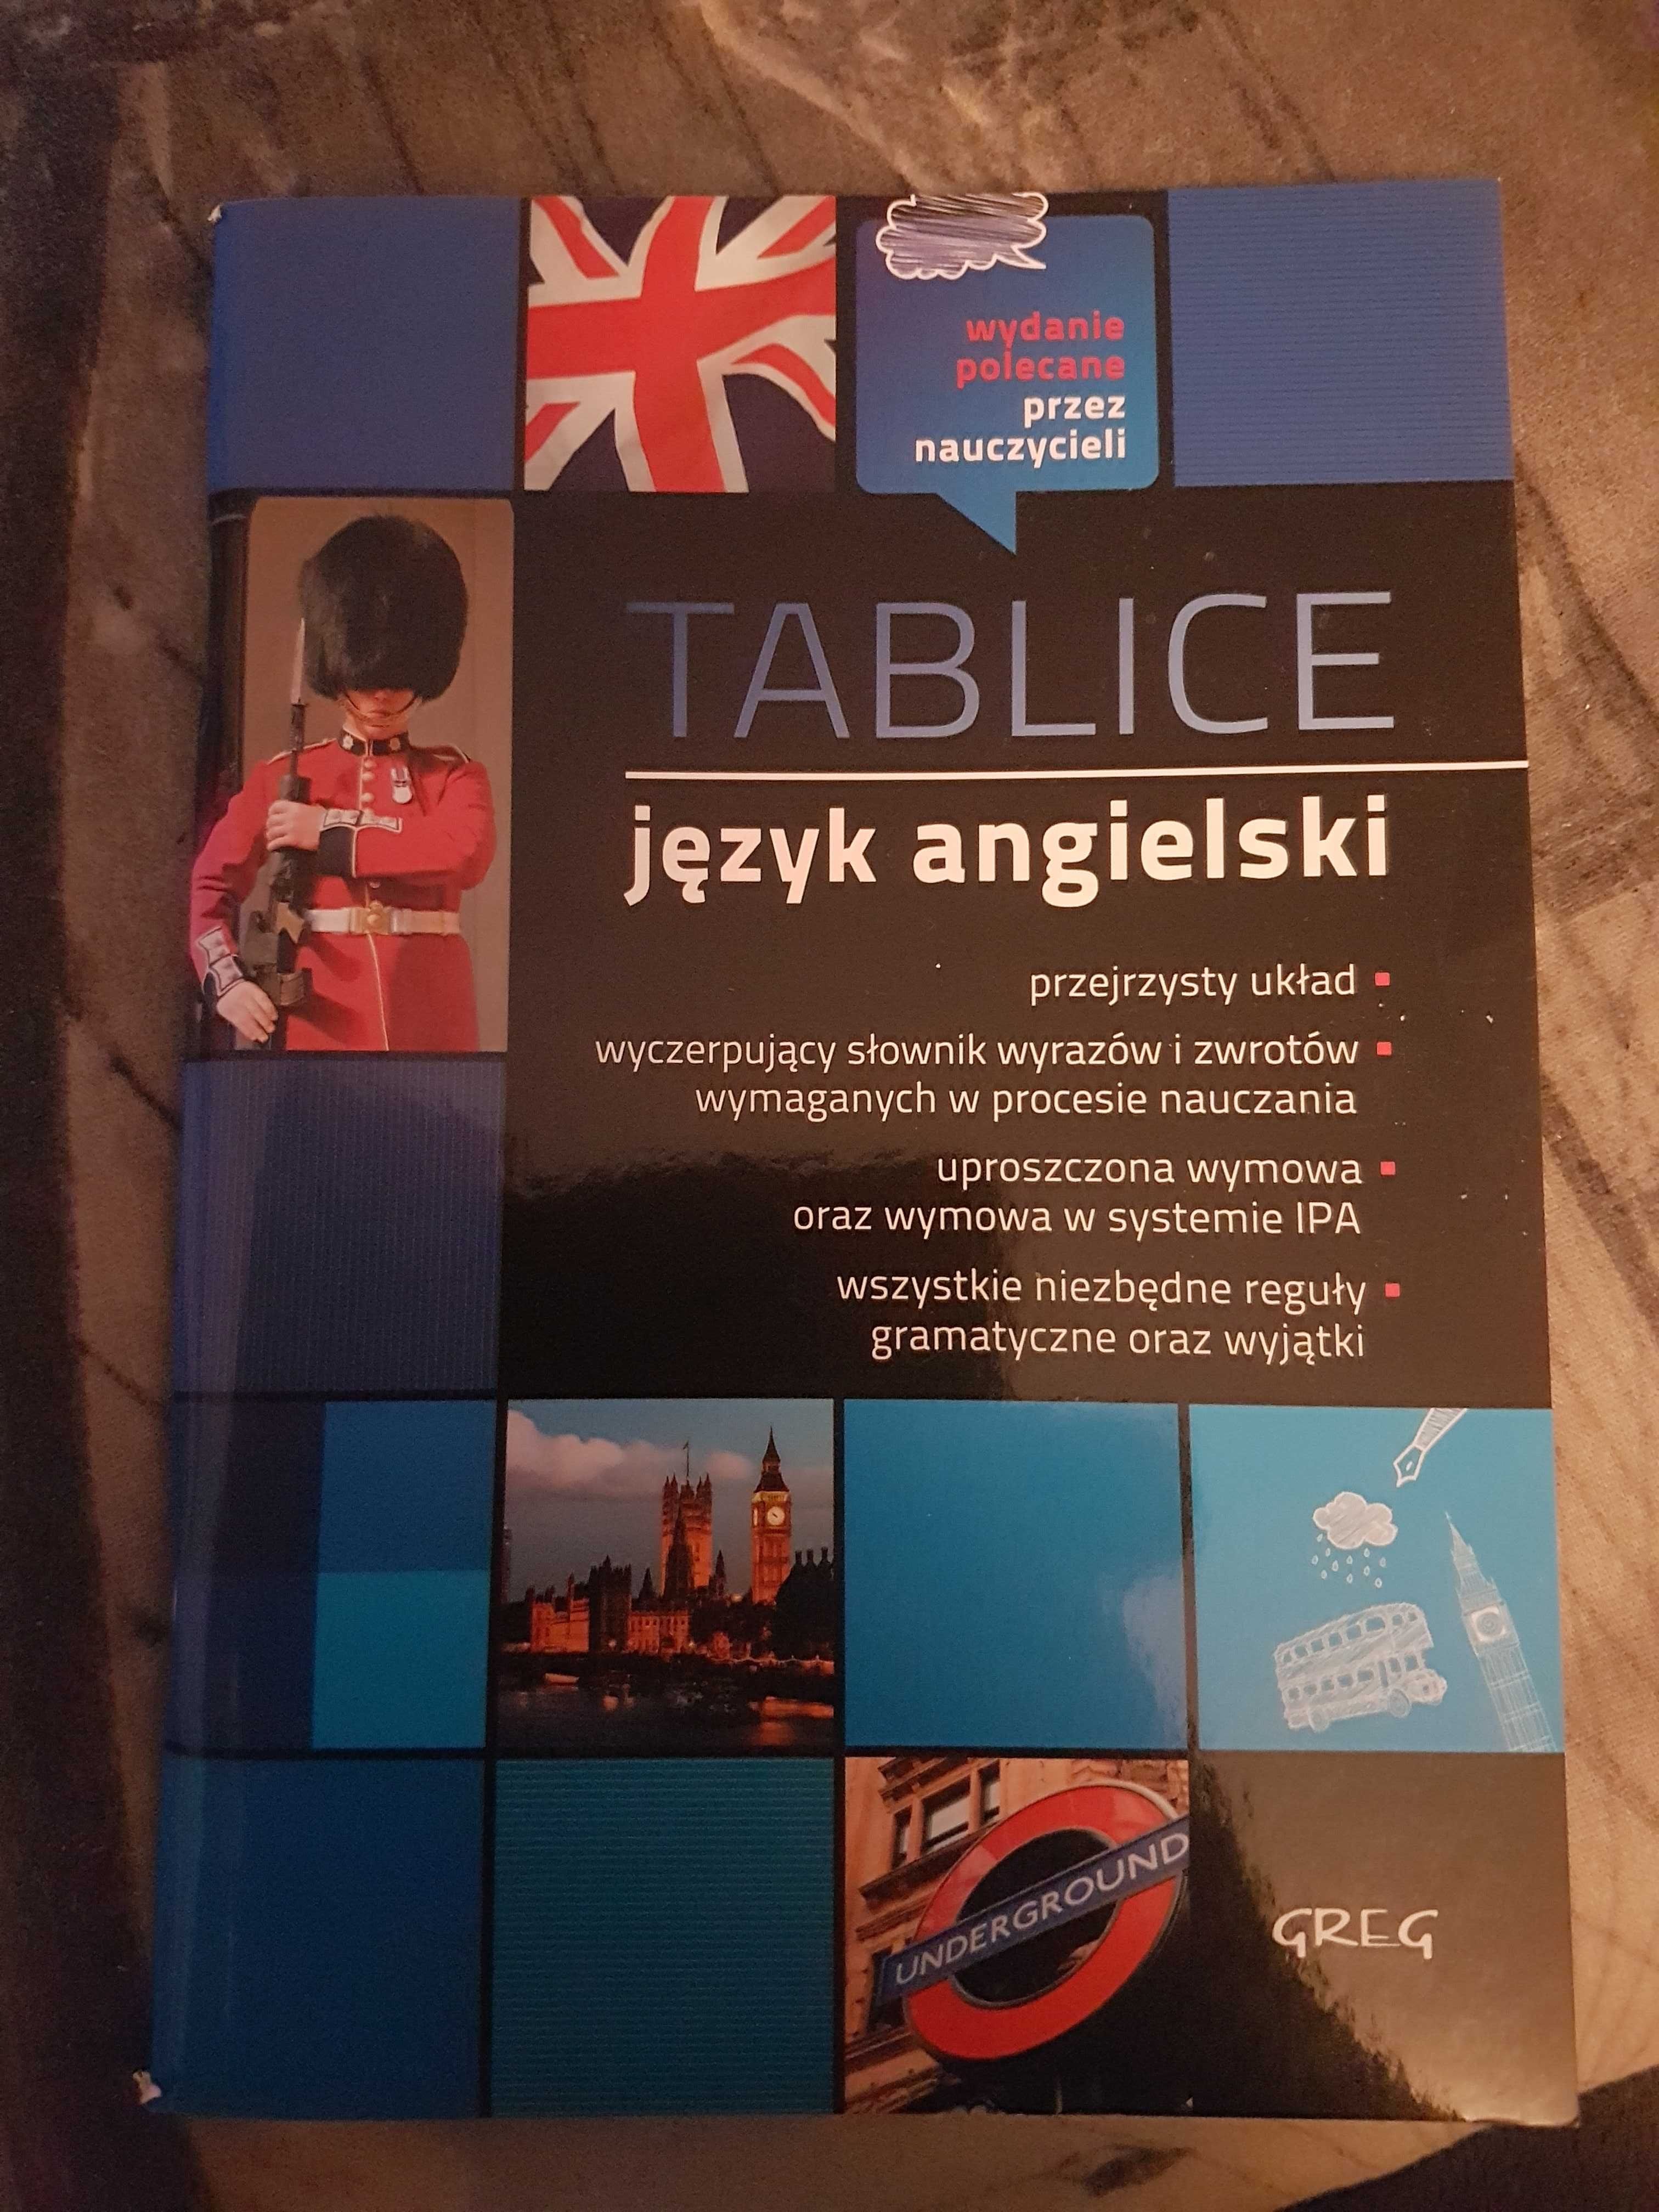 Tablice język angielski GREG.